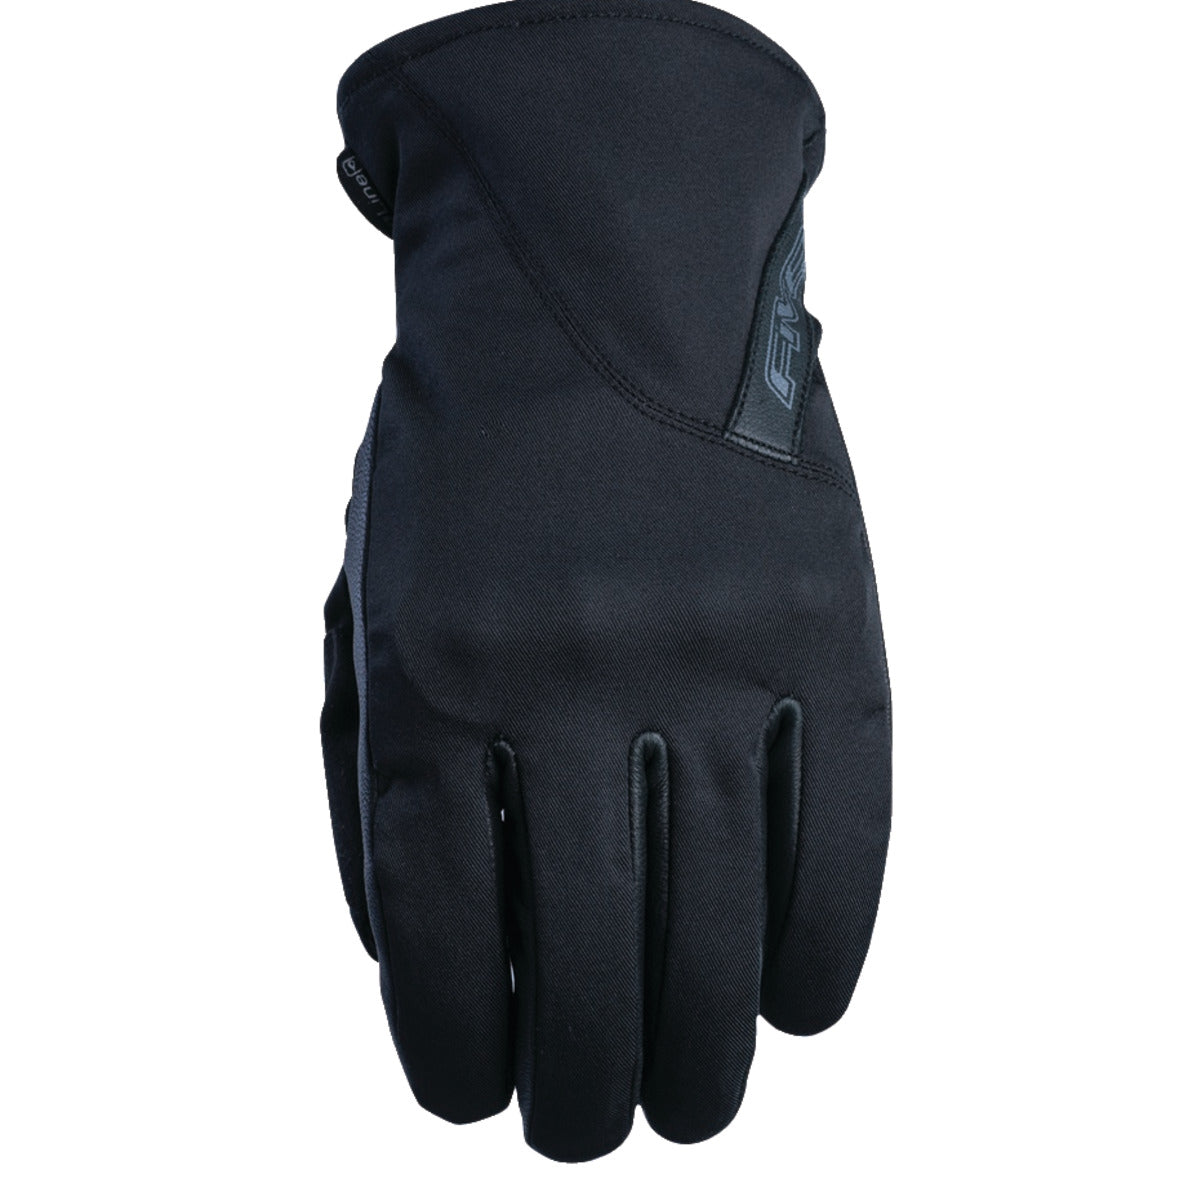 Five Milano Waterproof Adult Street Gloves-555